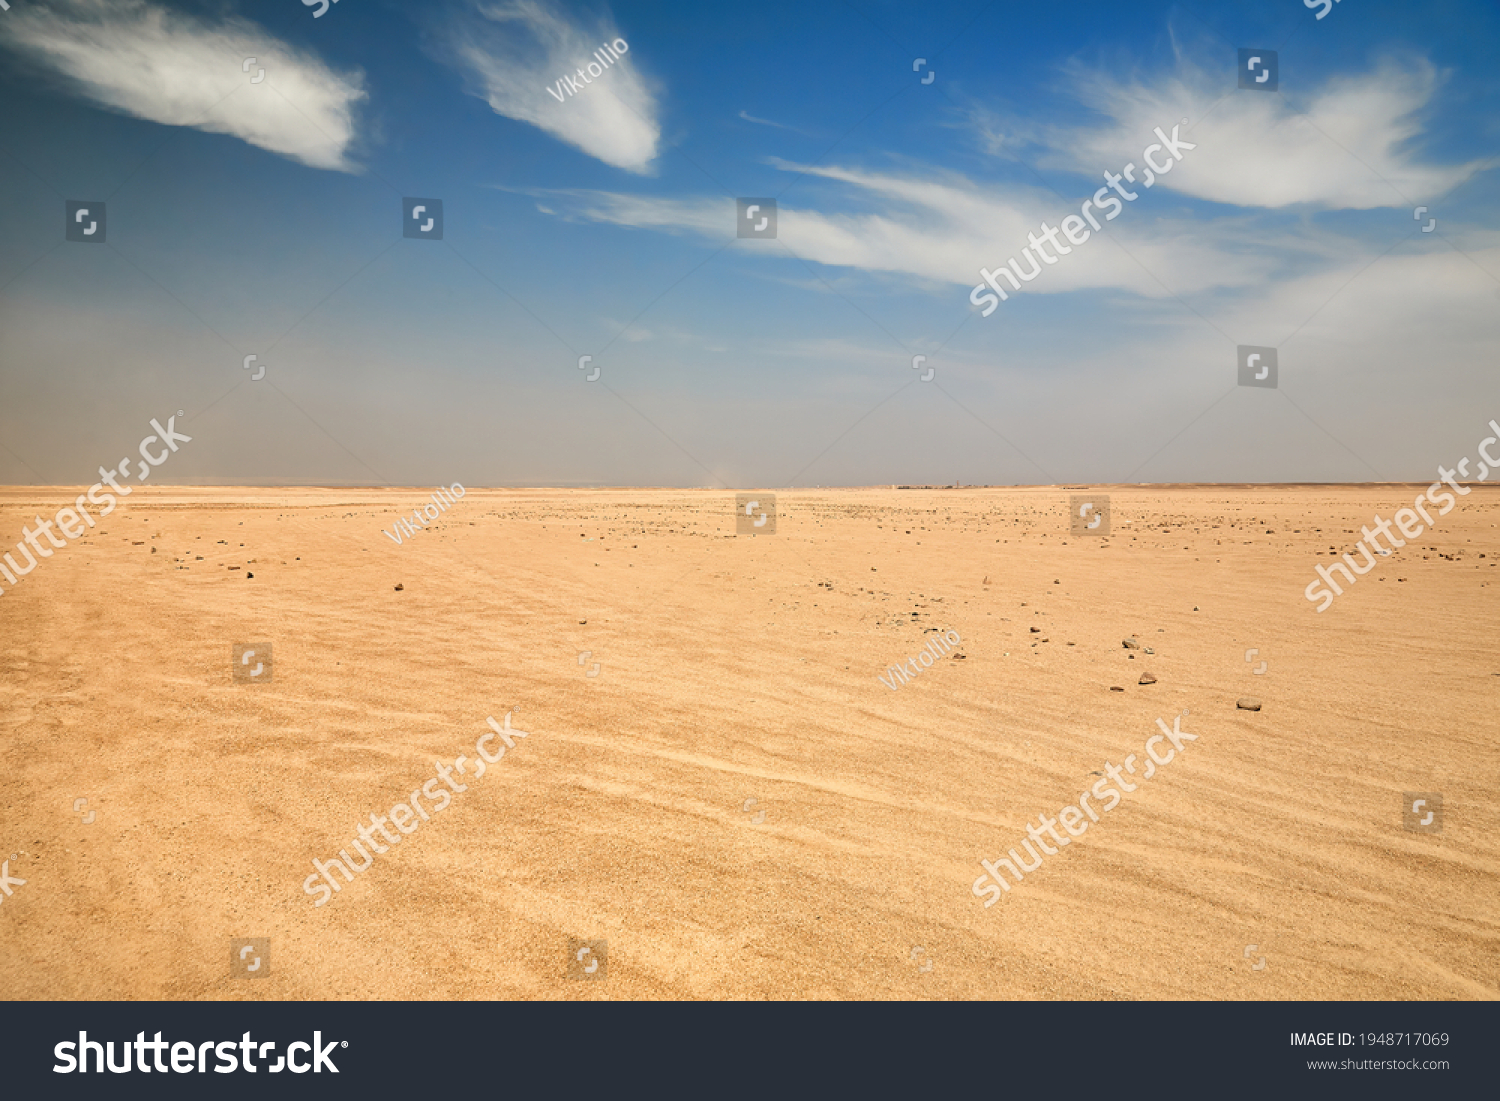 Dry desert landscape. Hot lifeless sand of desert and blue sky in summer sunny day. Flat desert of Egypt. Travel and tourism concept. #1948717069